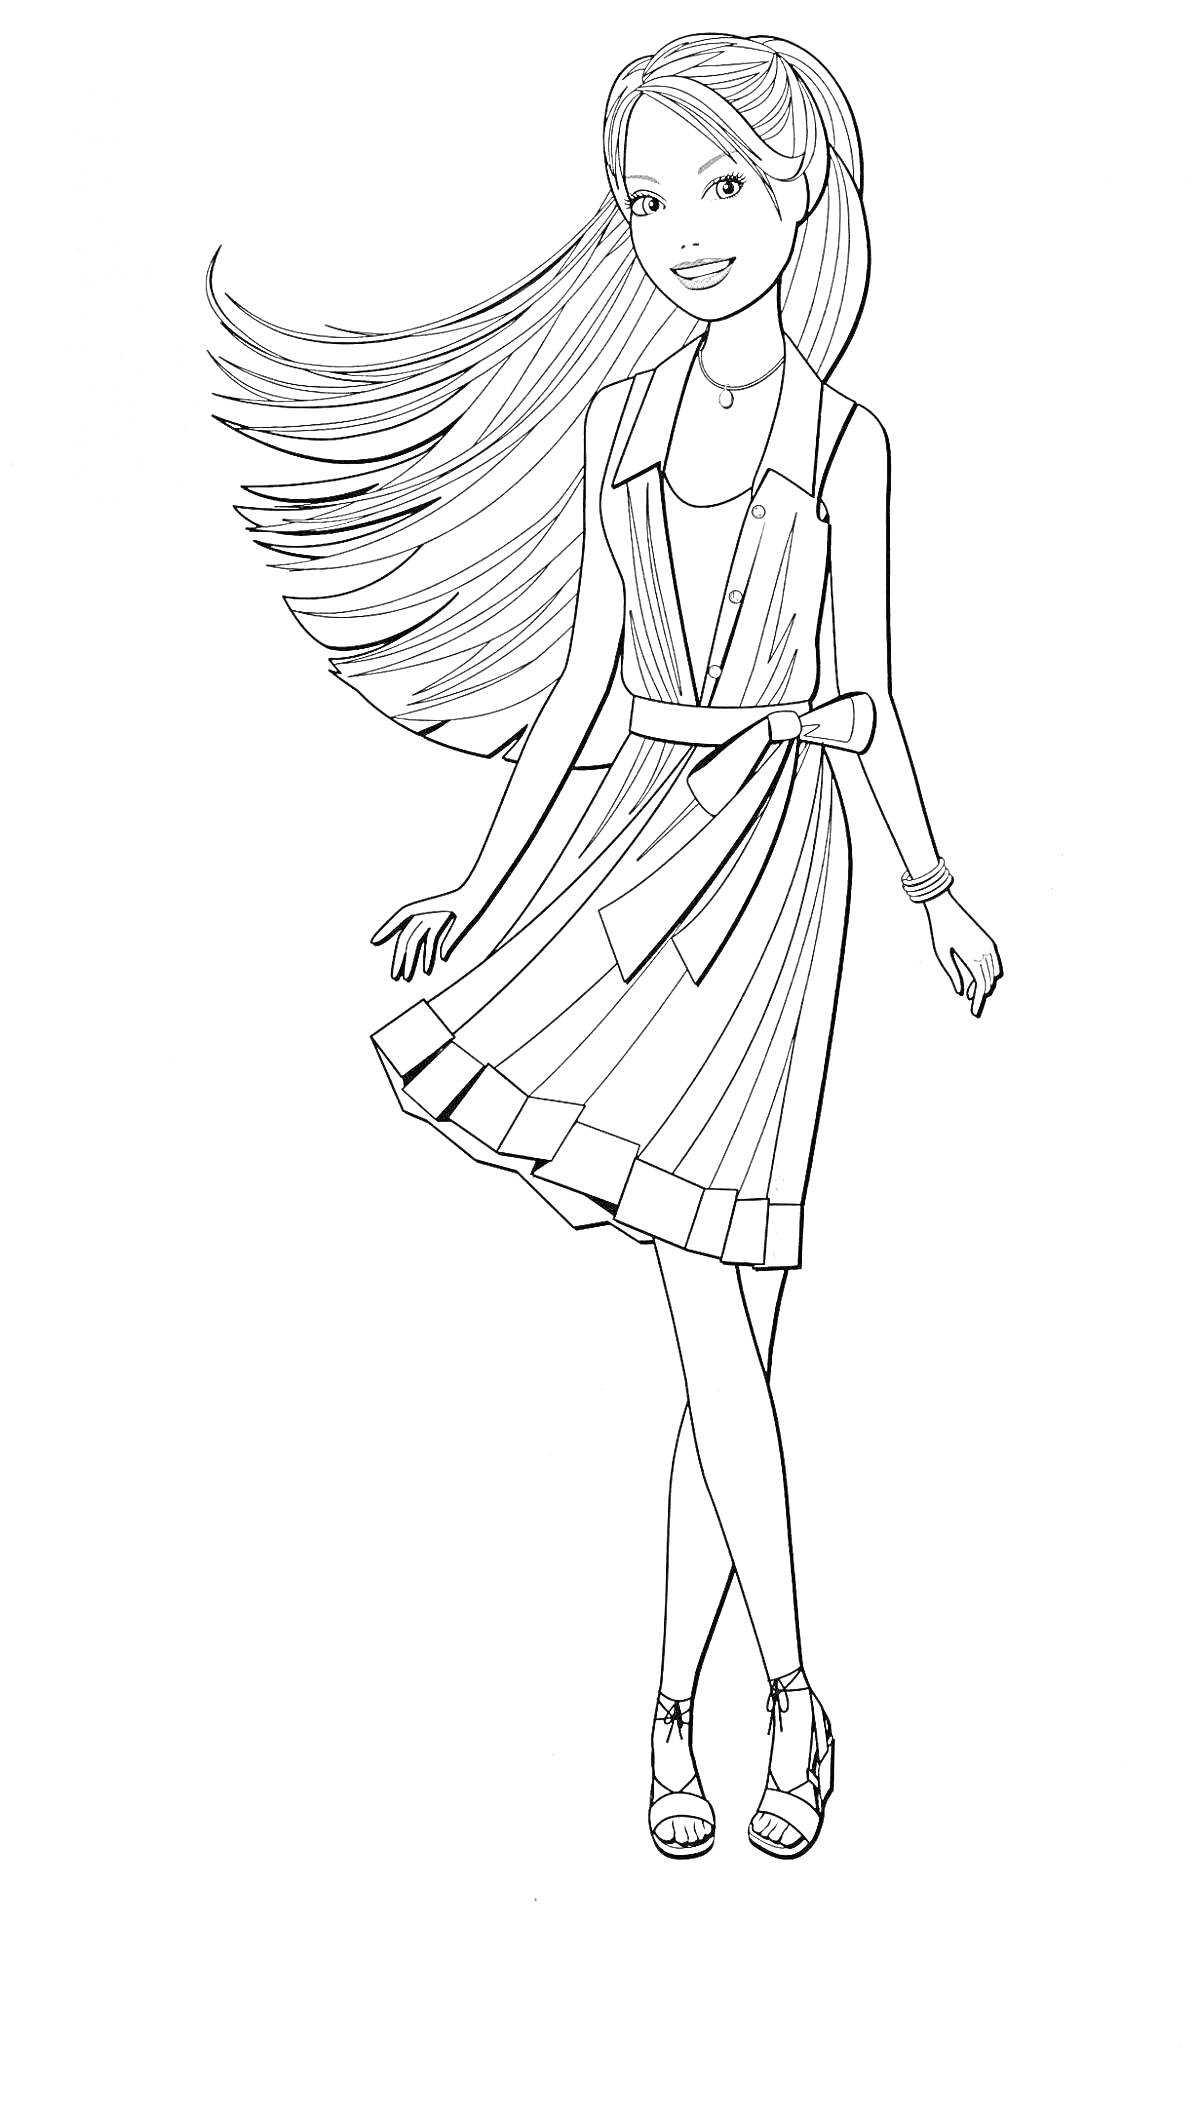 Девушка в платье и босоножках с развевающимися волосами